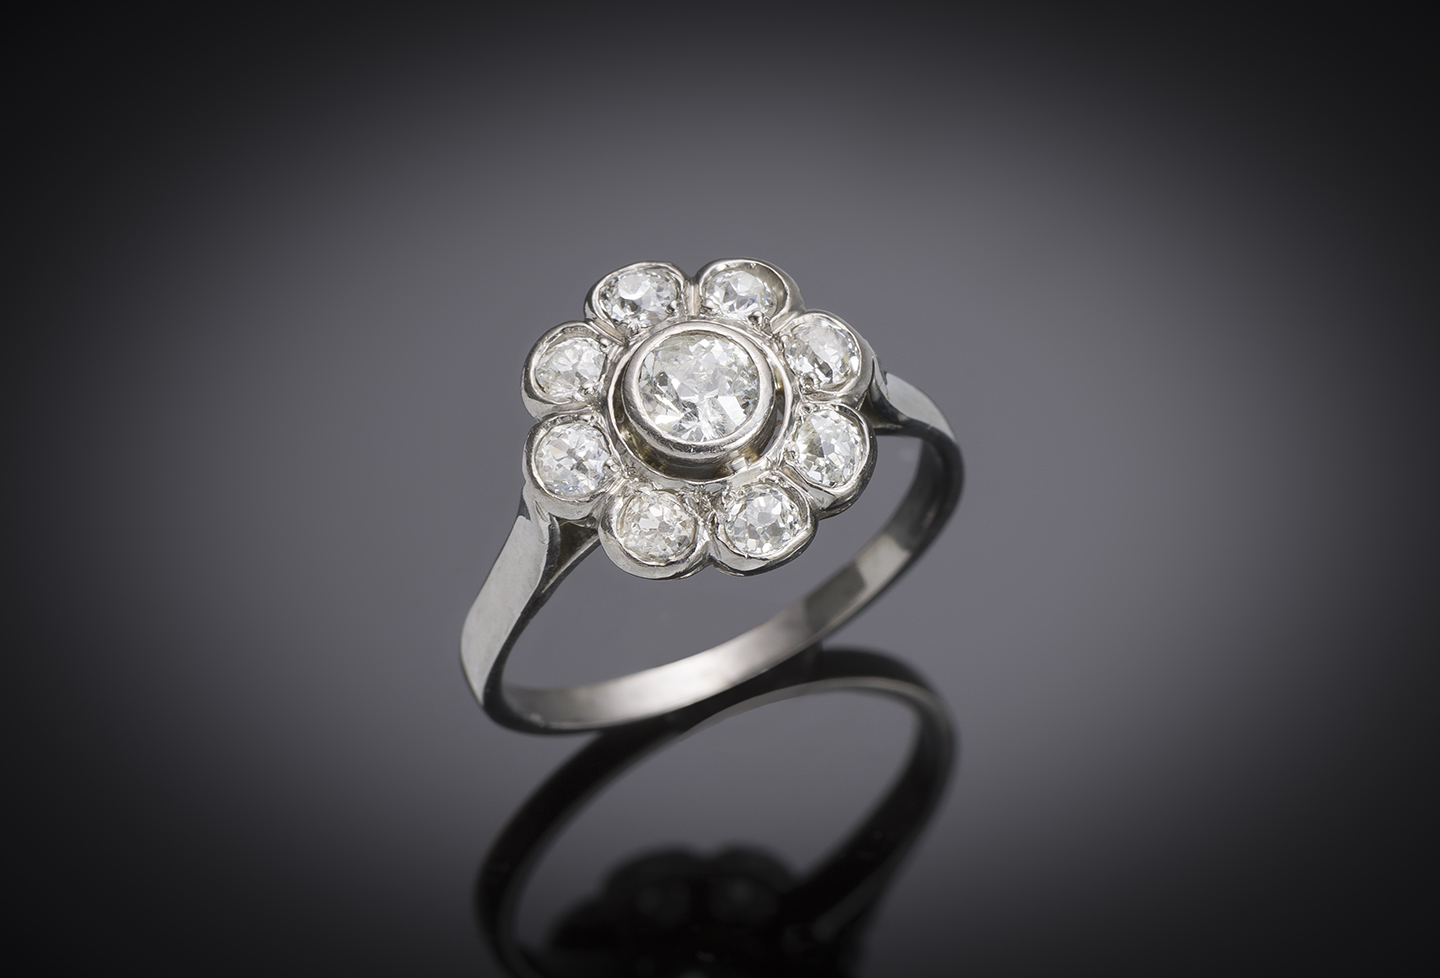 French Art Deco diamond ring (0.70 carat) in platinum-1